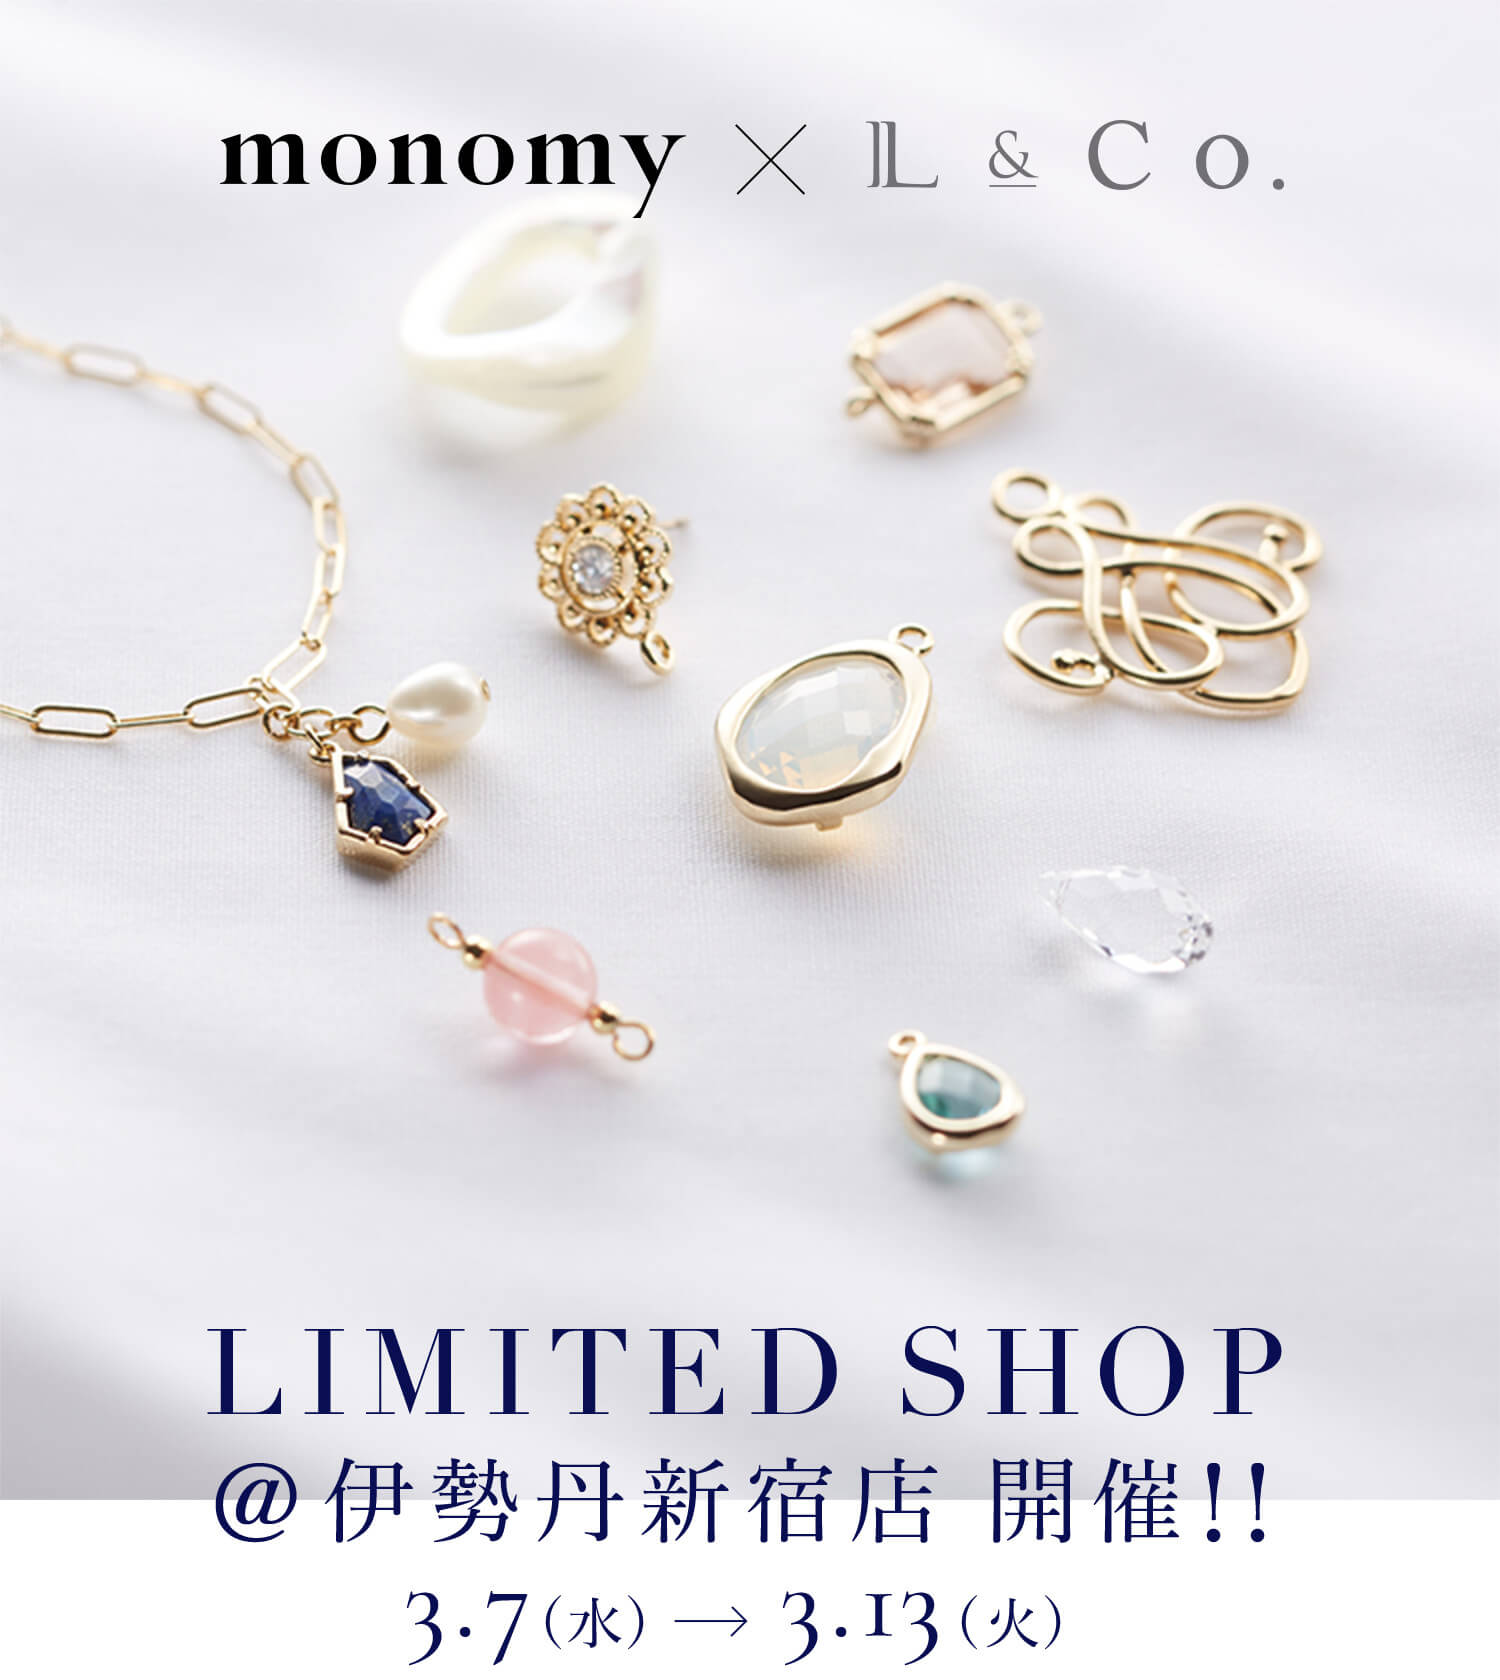 monomy×L&Co. LIMITED SHOP@伊勢丹新宿店 開催!! 3.7(水)-3.13(火)